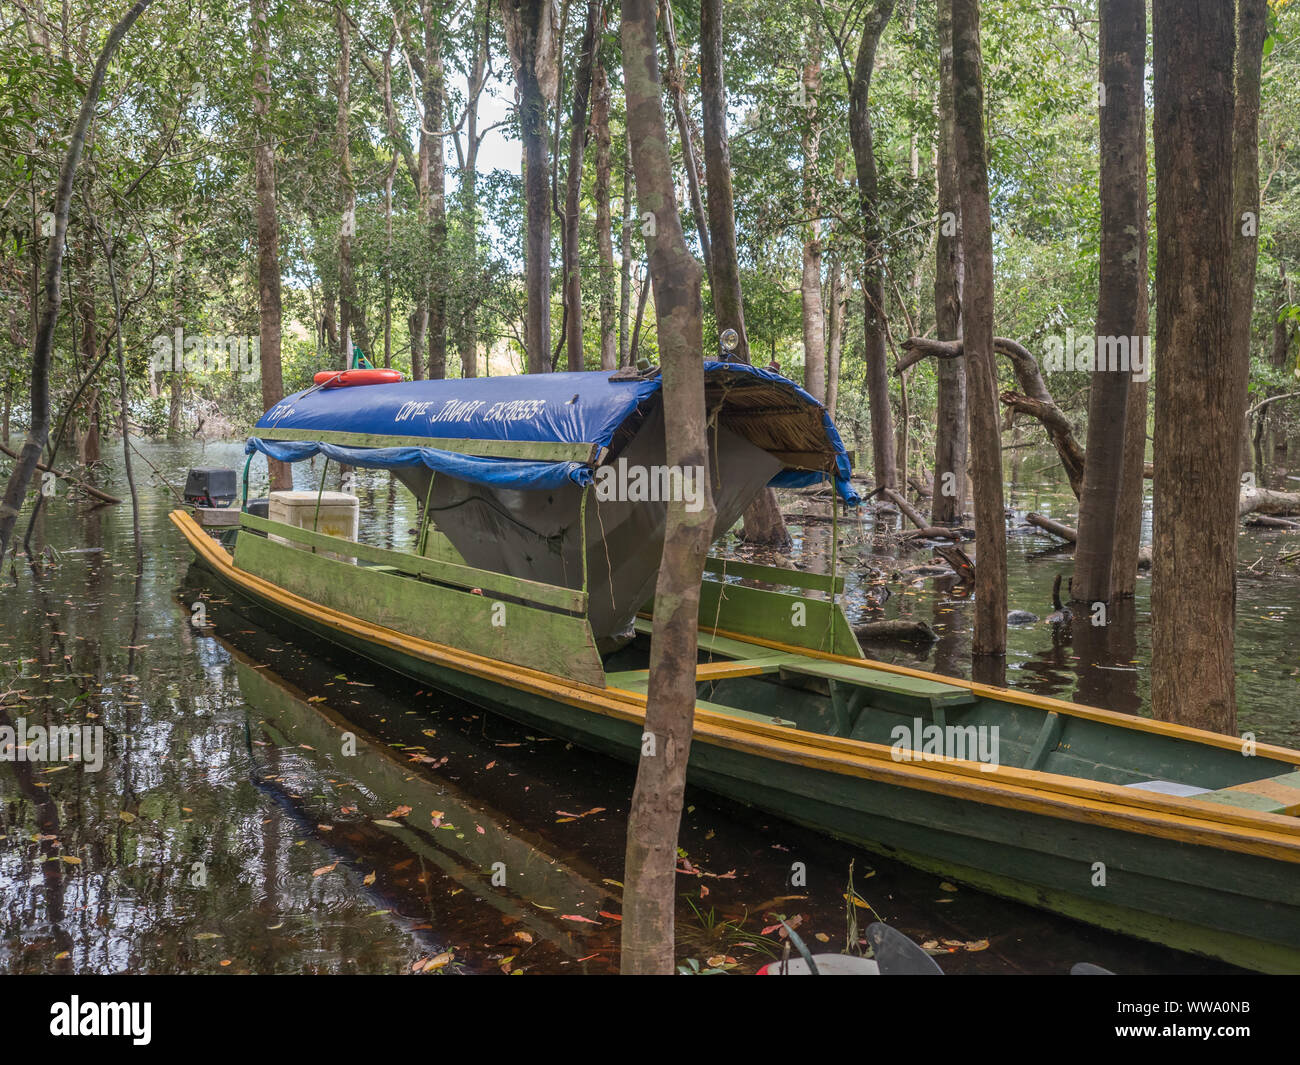 Jungle, Brazil - March 19 2018: Hammock on the boat in the amazon jungle. Selva. South America, Amazonia. Stock Photo